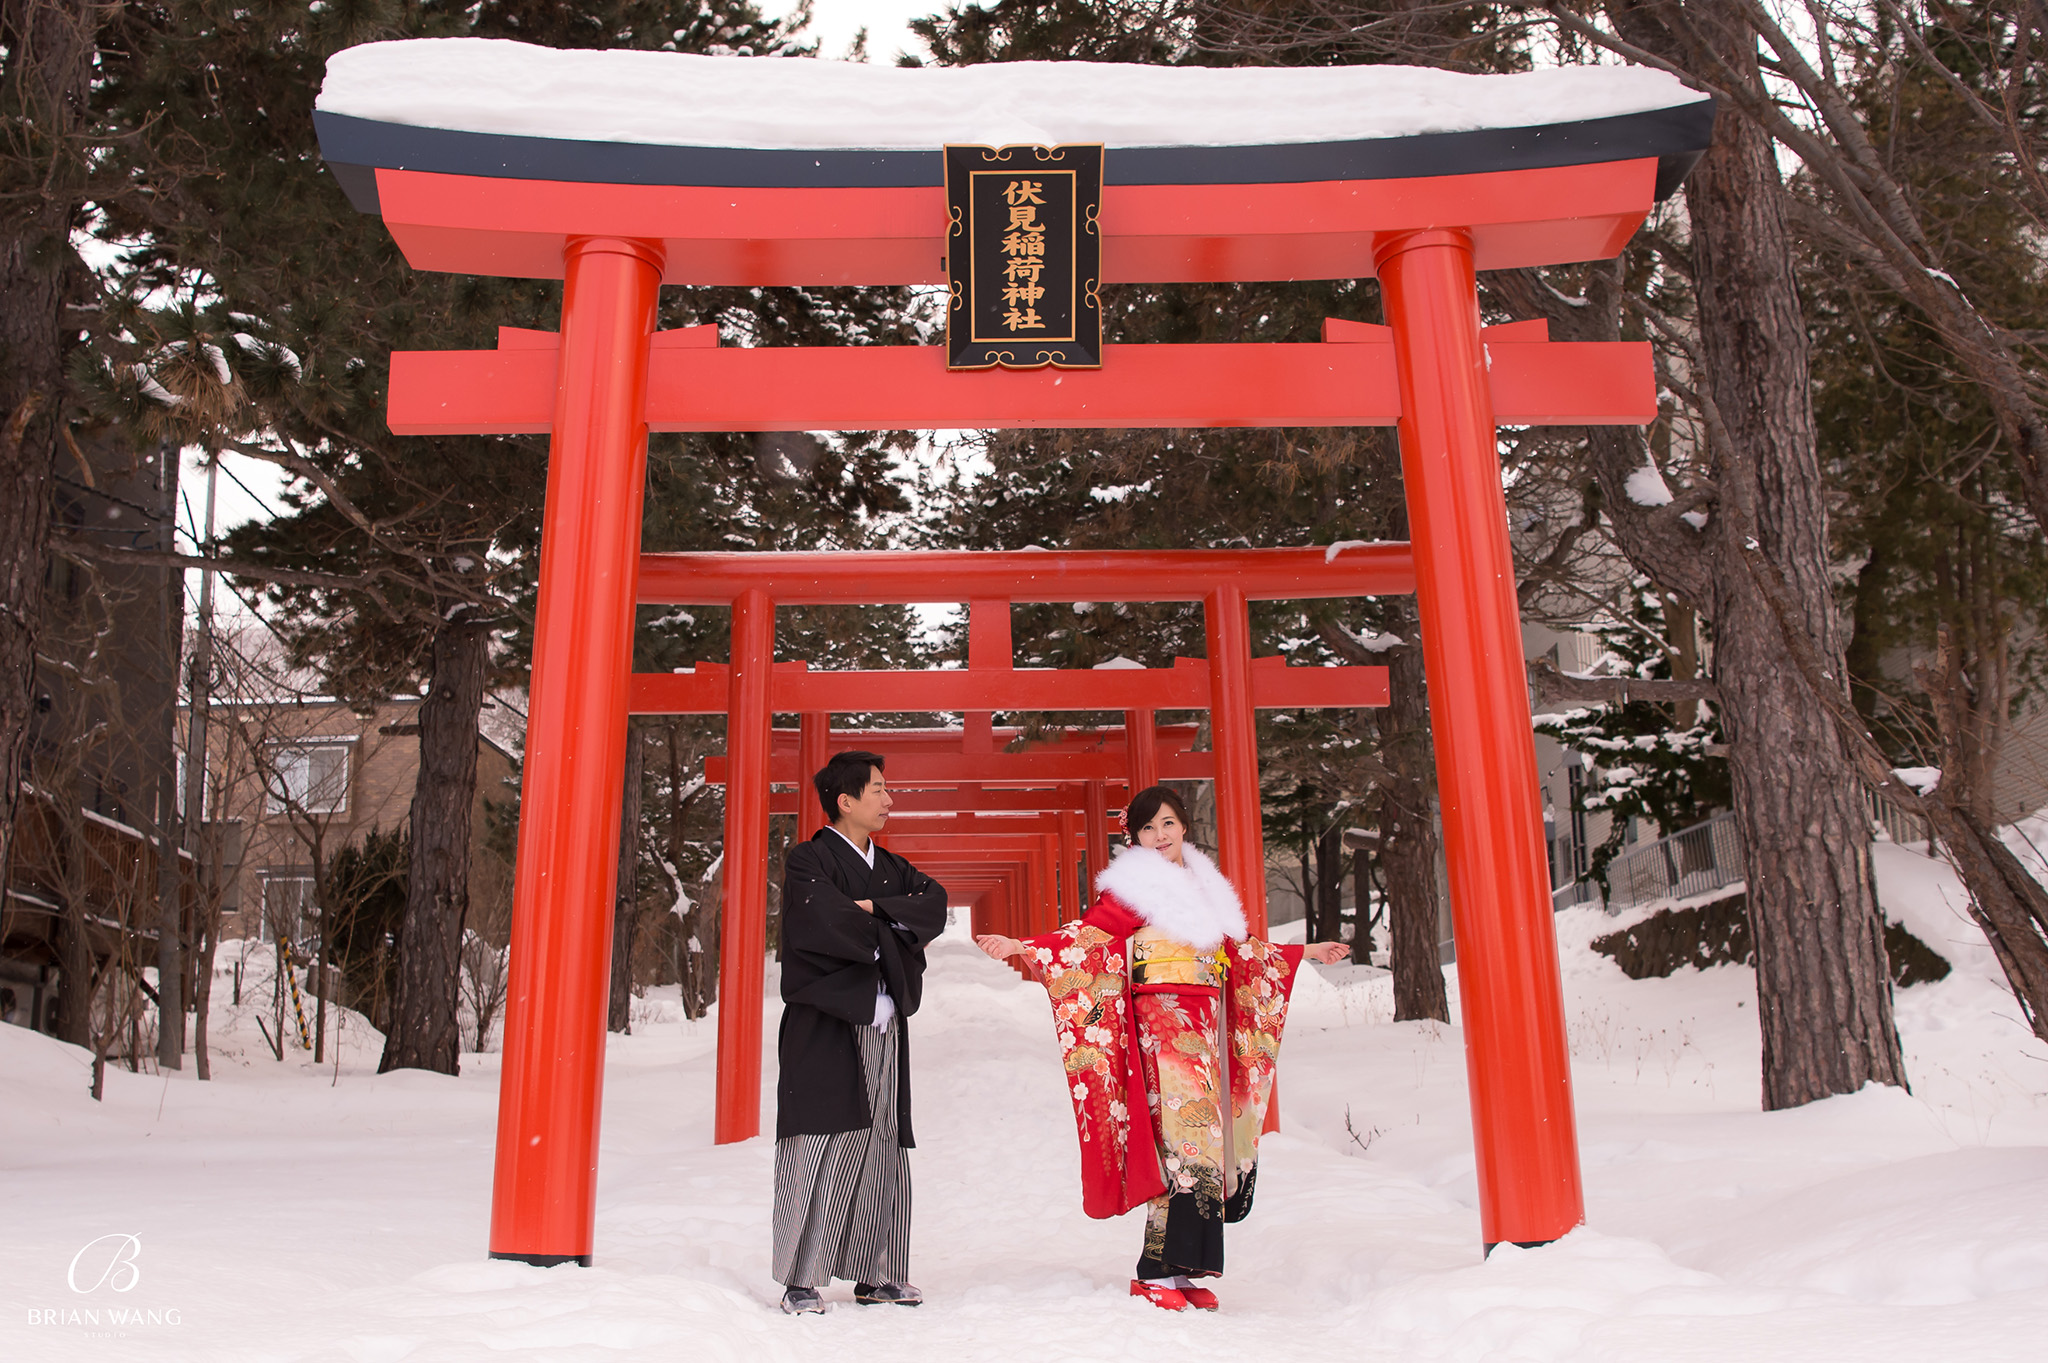 北海道海外婚紗,日本海外婚紗費用,雪景婚紗,伏見稻荷,和服攝影,北海道婚紗攝影